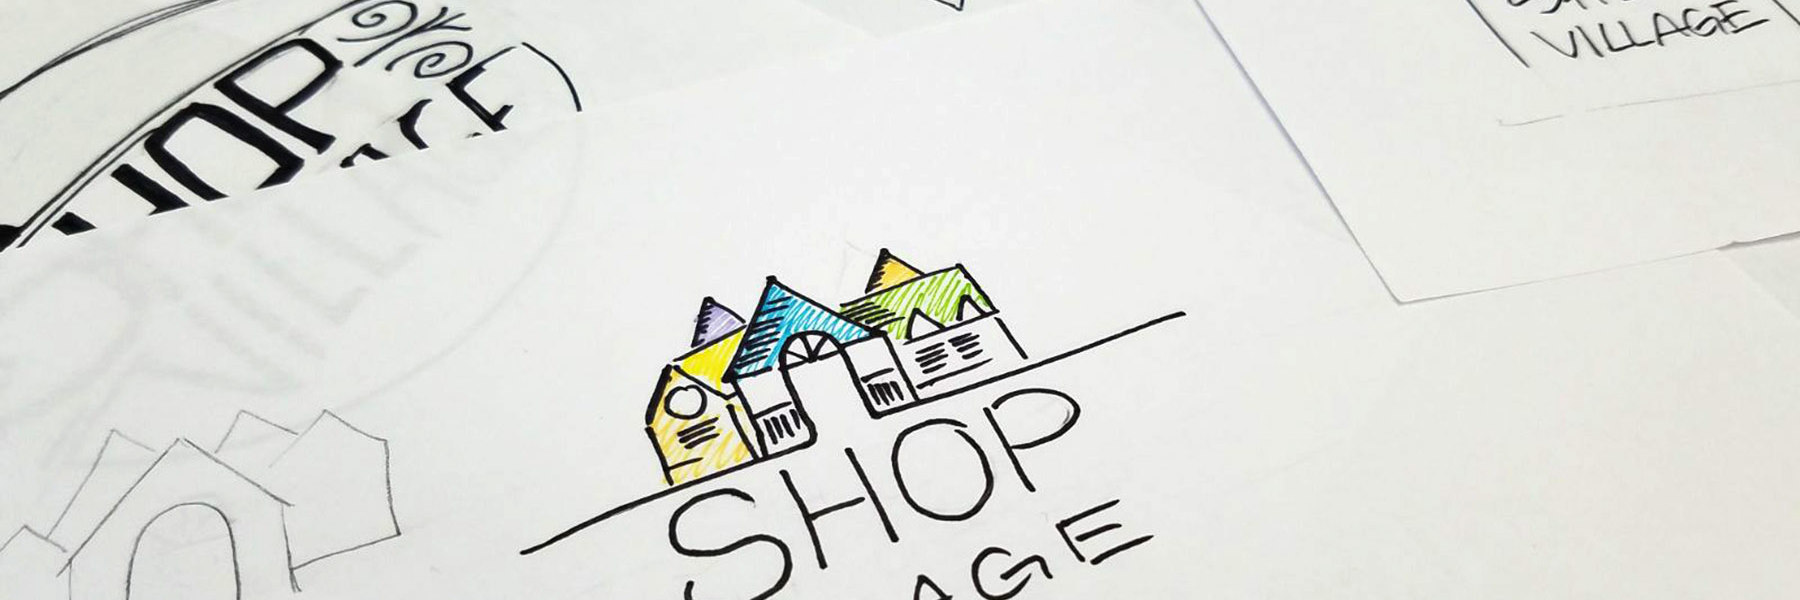 Shop Village Logo sketches